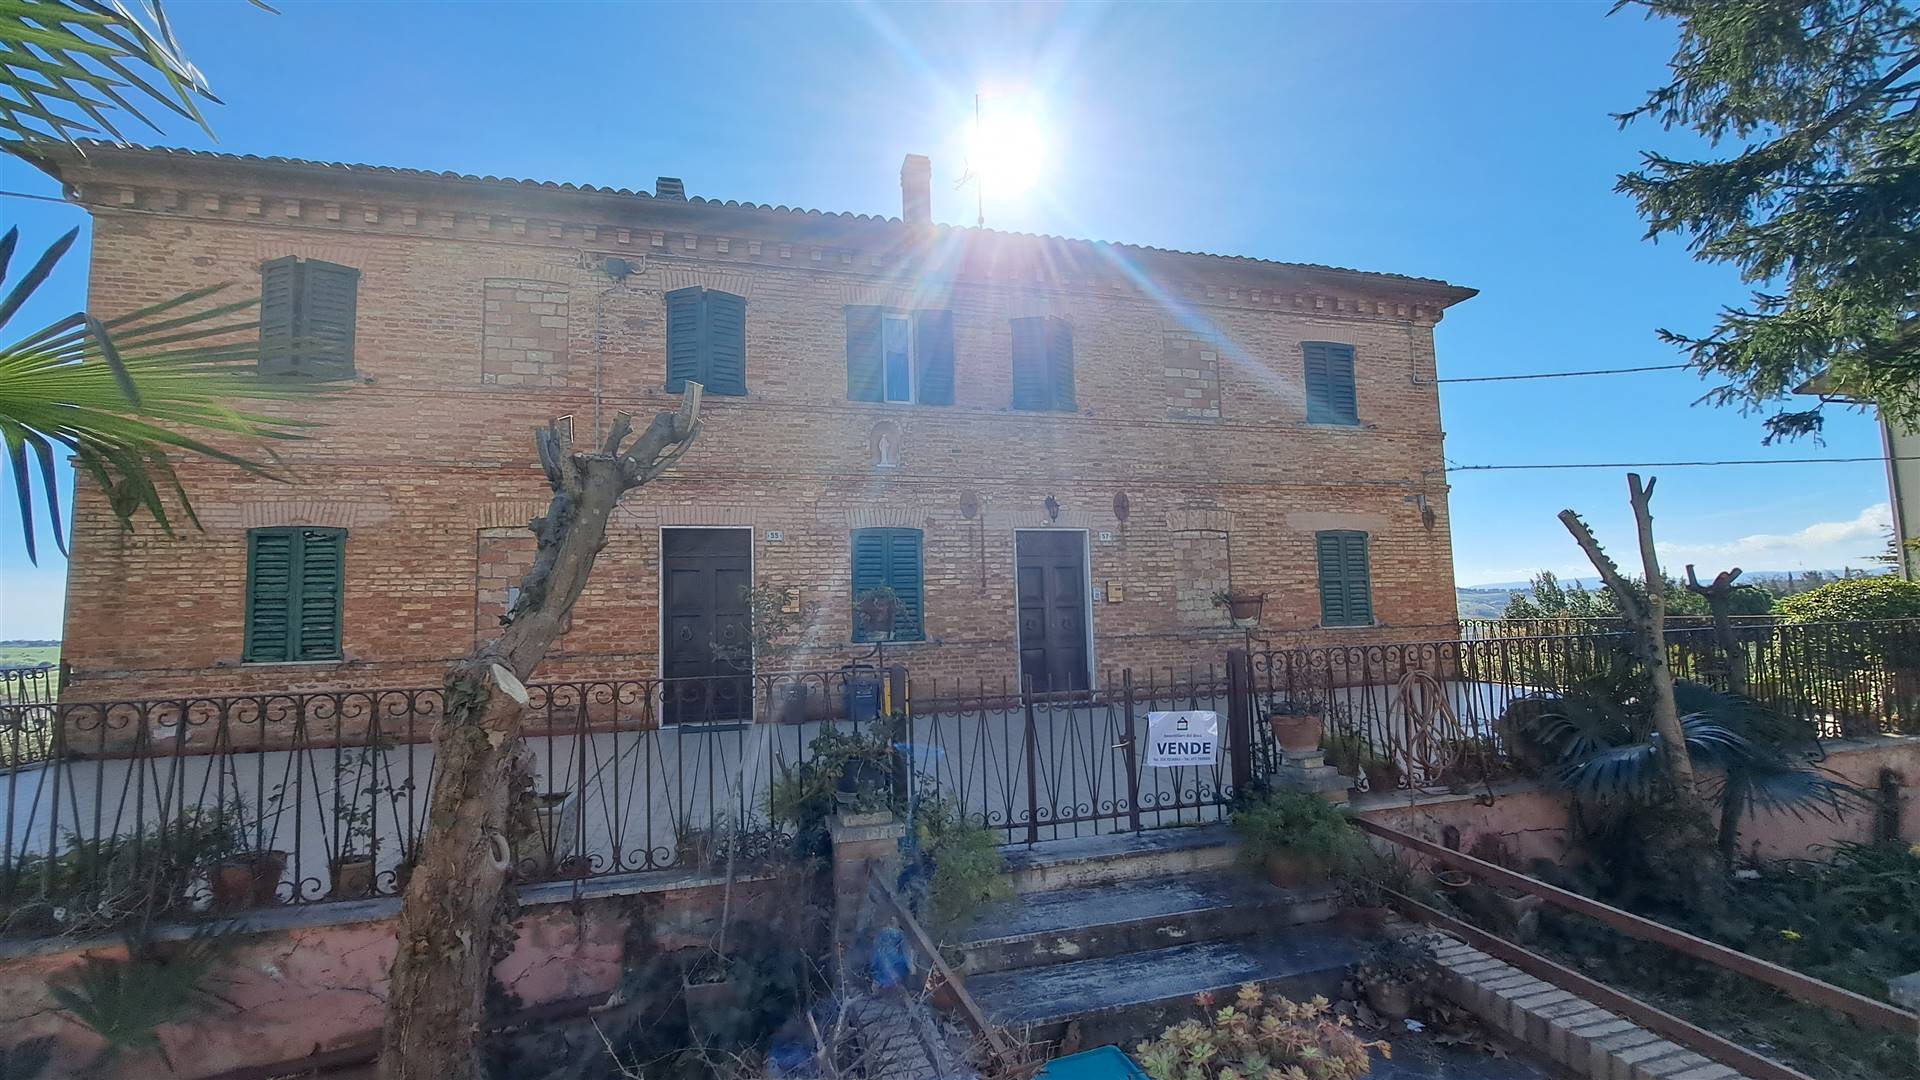 Villa Bifamiliare in vendita a Ostra, 11 locali, prezzo € 290.000 | CambioCasa.it